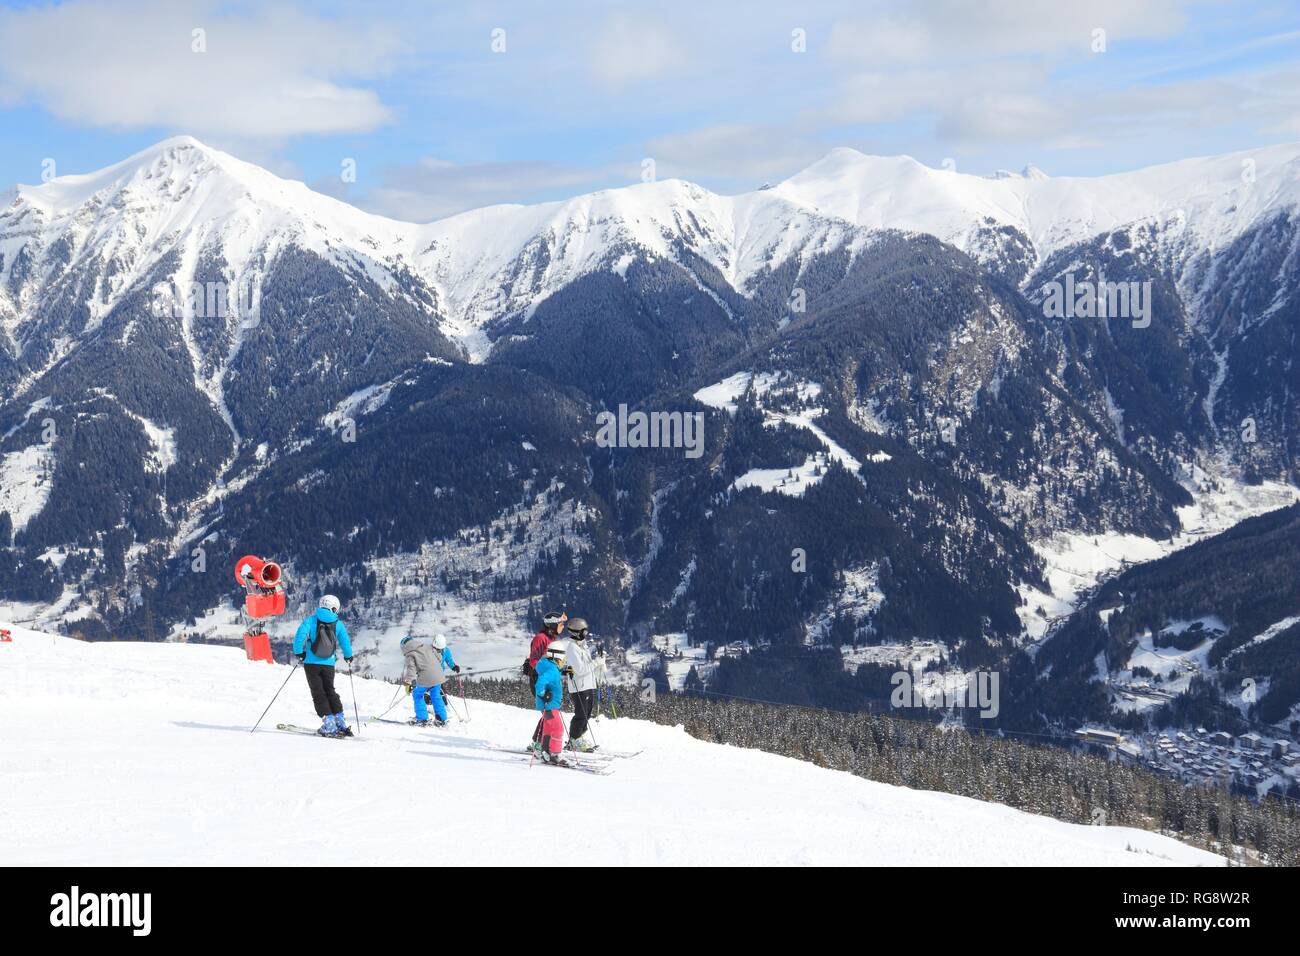 BAD GASTEIN, Austria - 9 Marzo 2016: persone ski in Bad Gastein. Esso è parte di sci Amade, una delle più grandi regioni di sci in Europa con 760km di piste da sci. Foto Stock